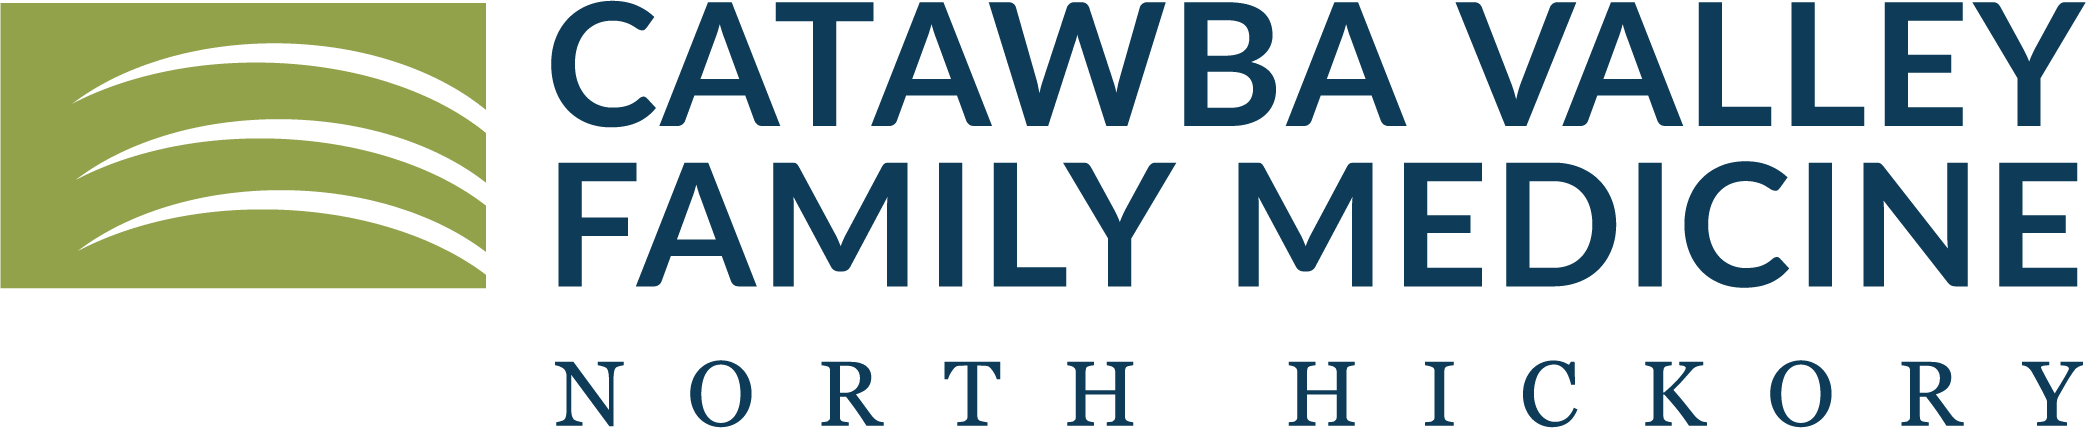 Catawba Valley Family Medicine - North Hickory